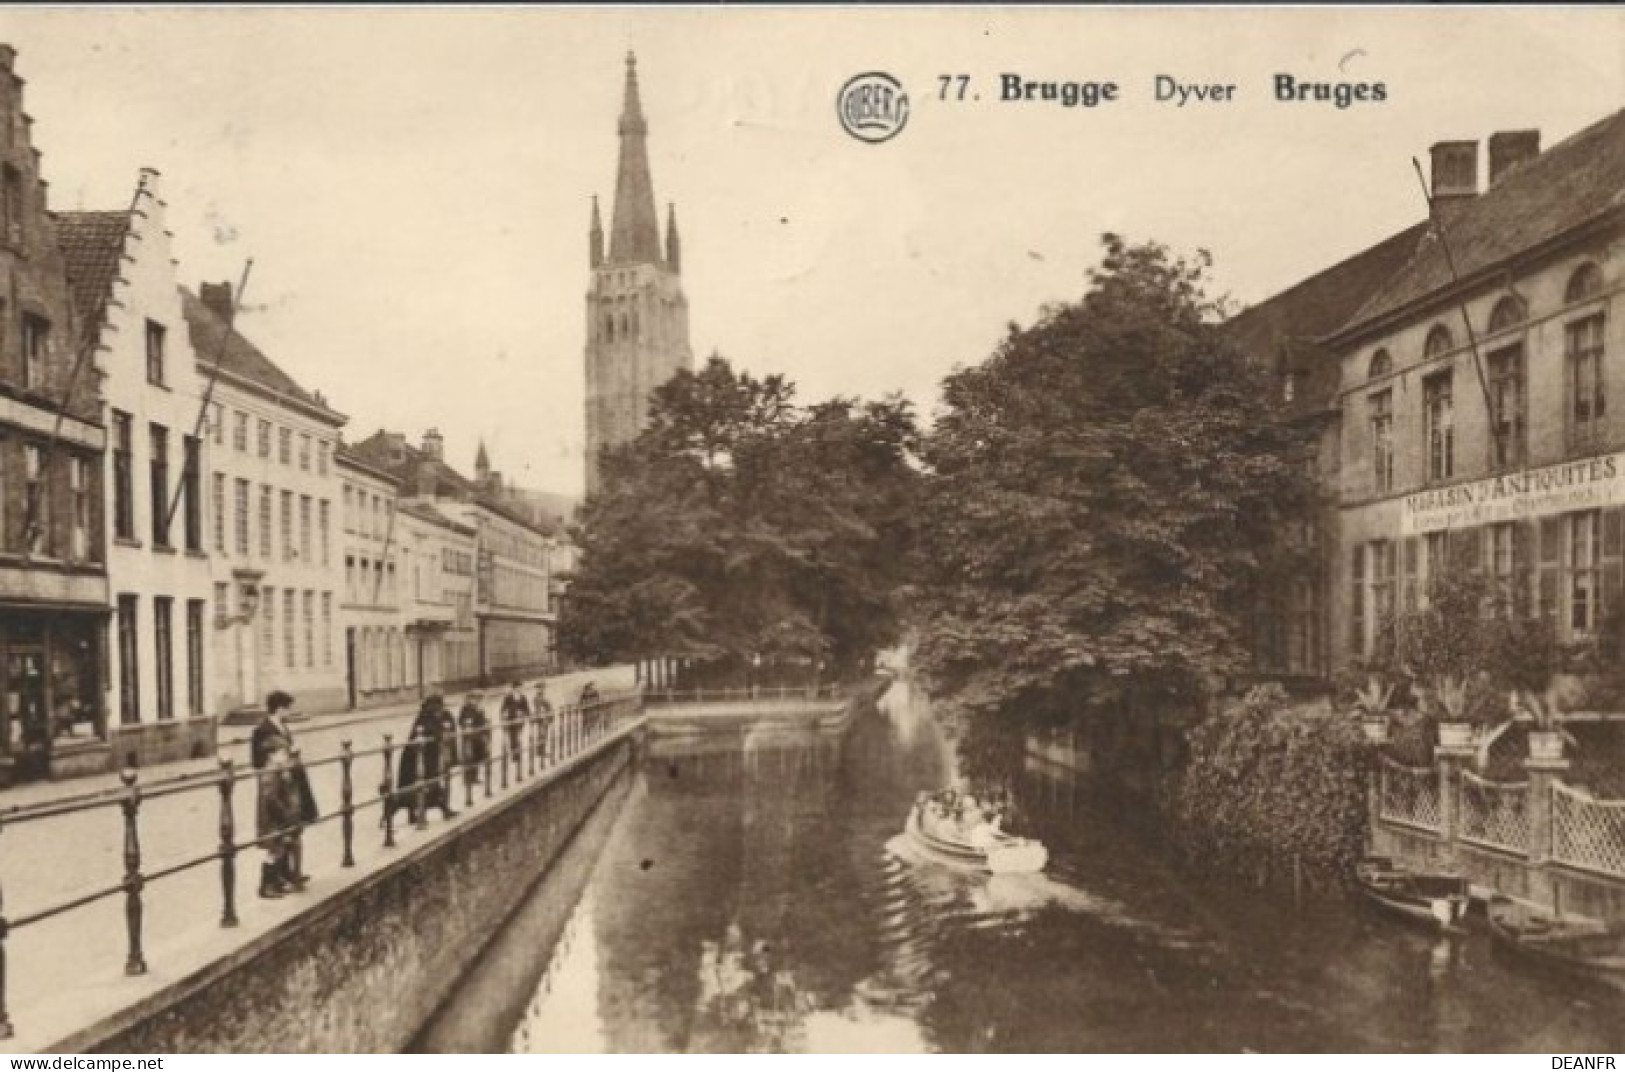 BRUGES : Dyver. - Brugge